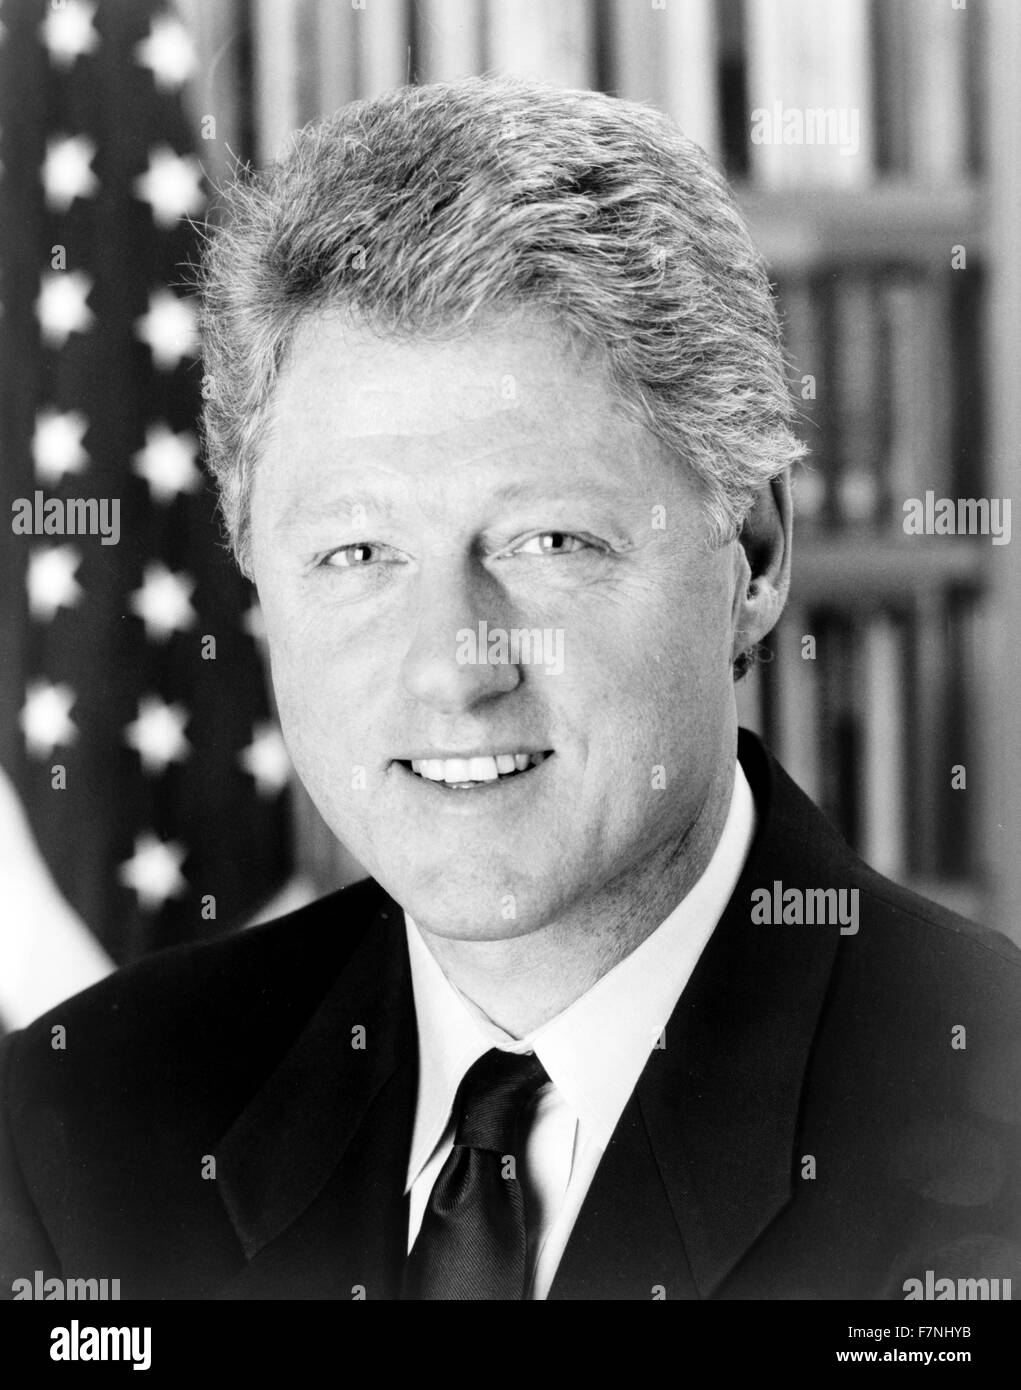 William Jefferson "Bill" Clinton (nacido en 1946), político estadounidense y entre 1993 y 2001, el Presidente de los Estados Unidos Foto de stock